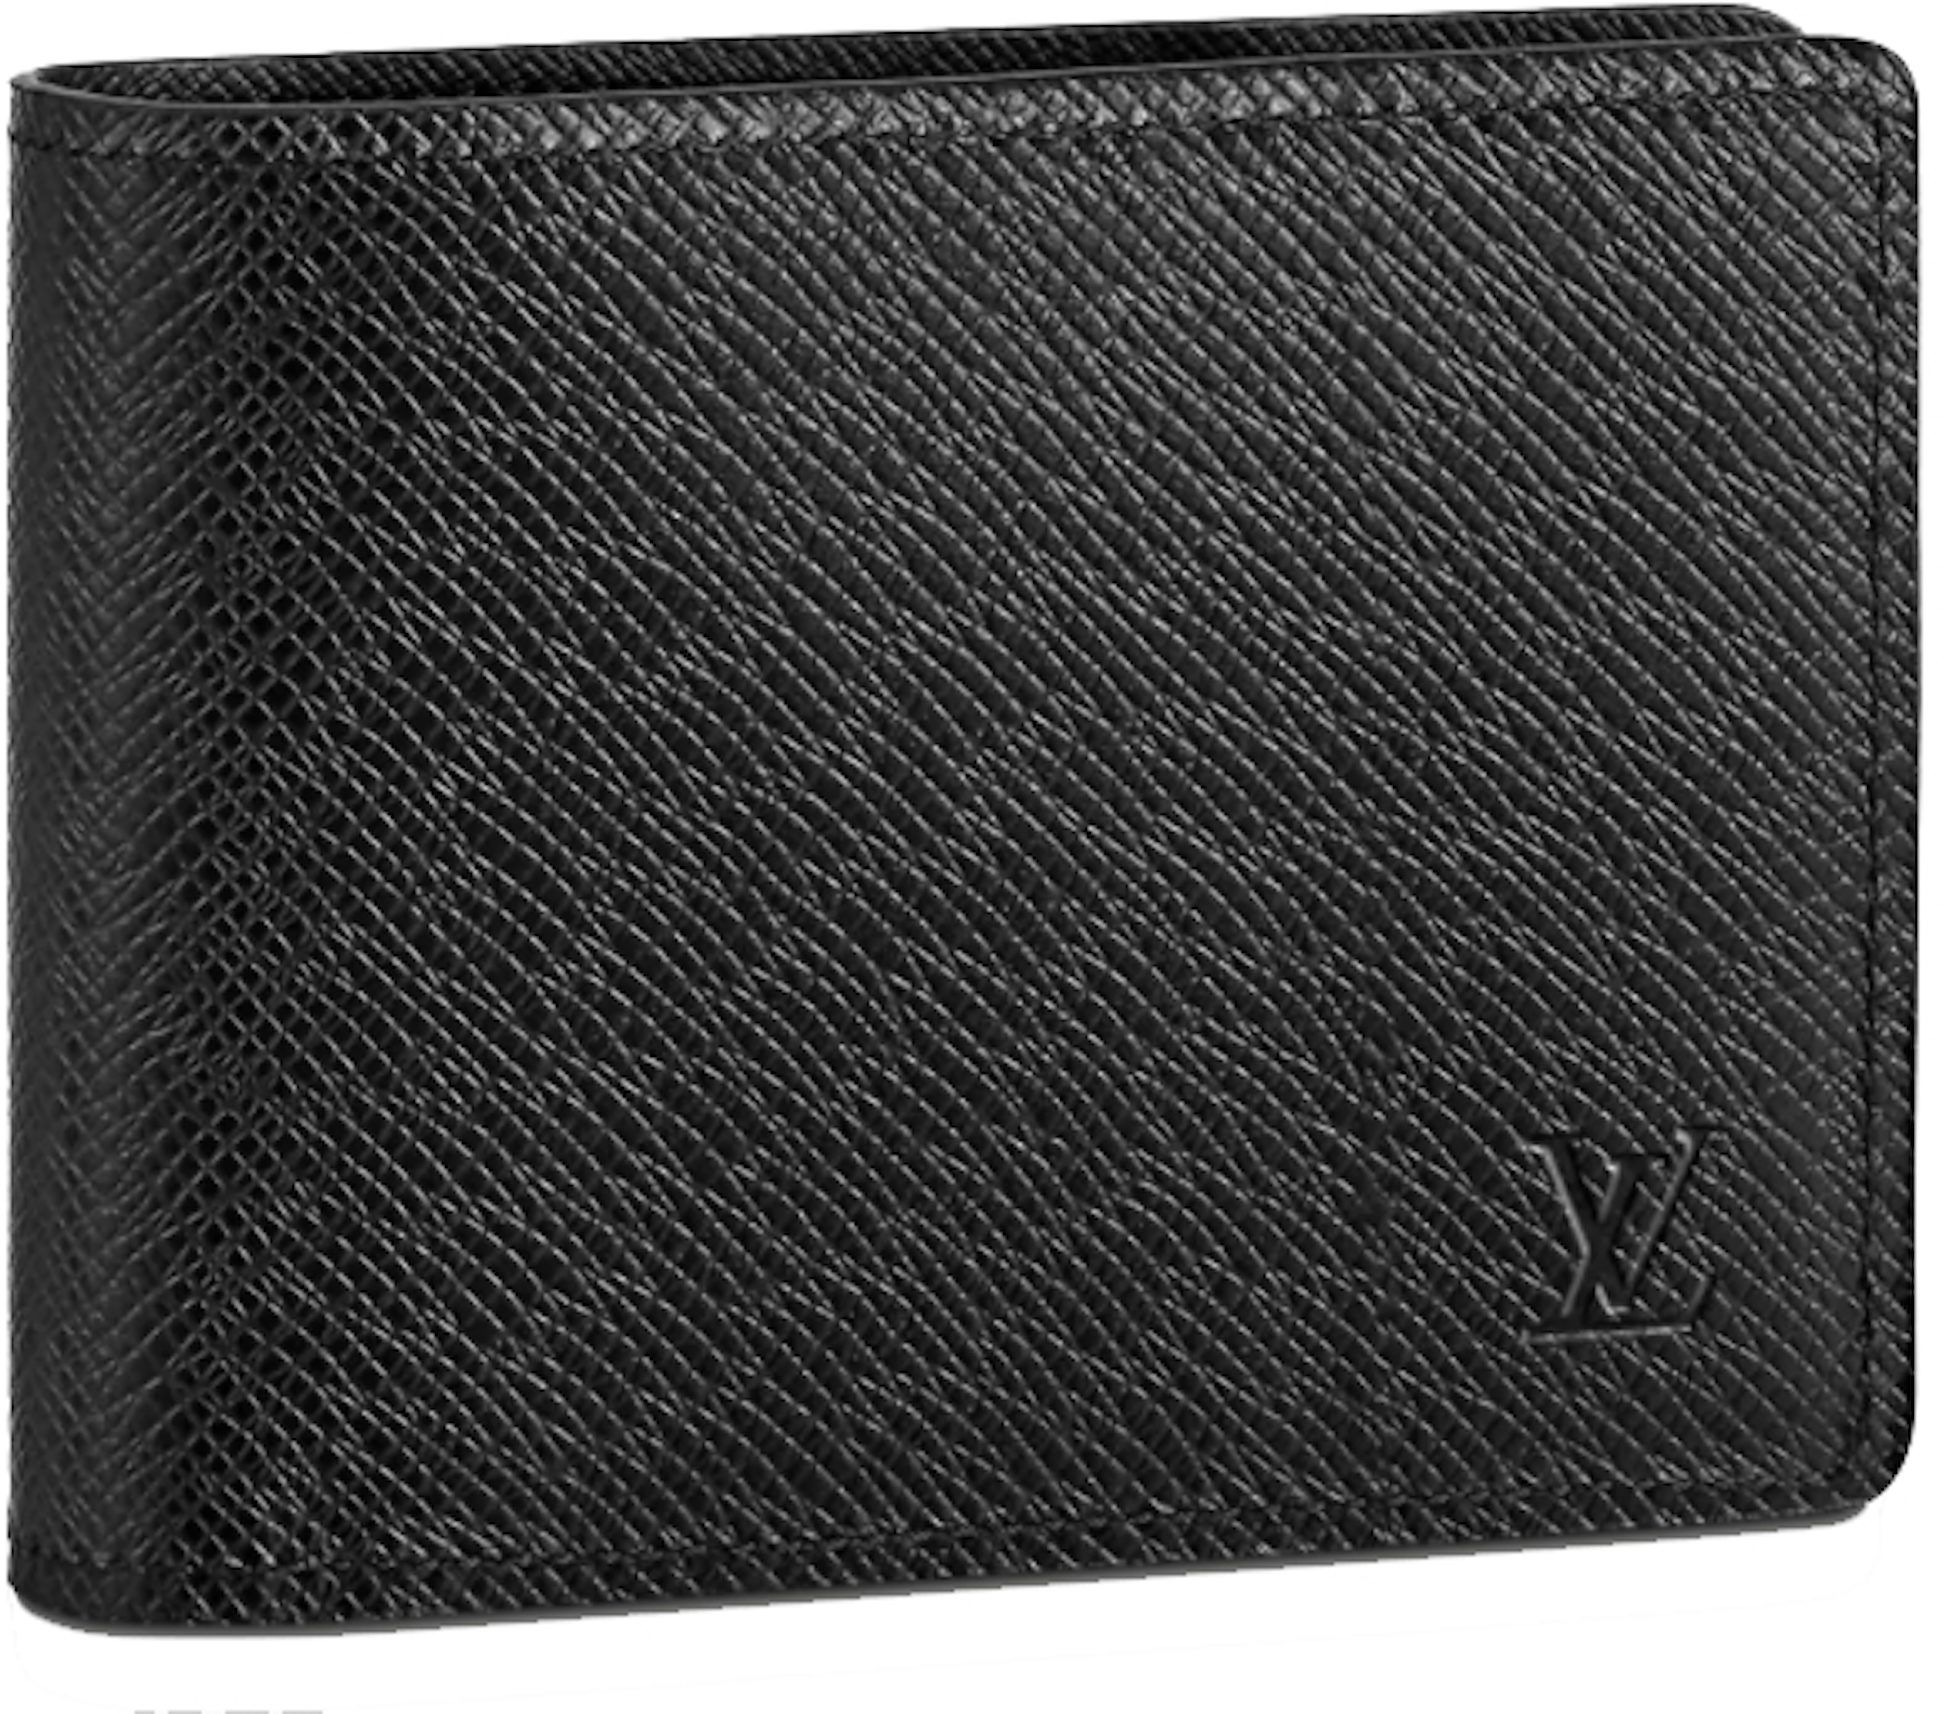 Louis Vuitton 2020 Eclipse Virgil Abloh Patchwork With Receipt Multiple  Wallet